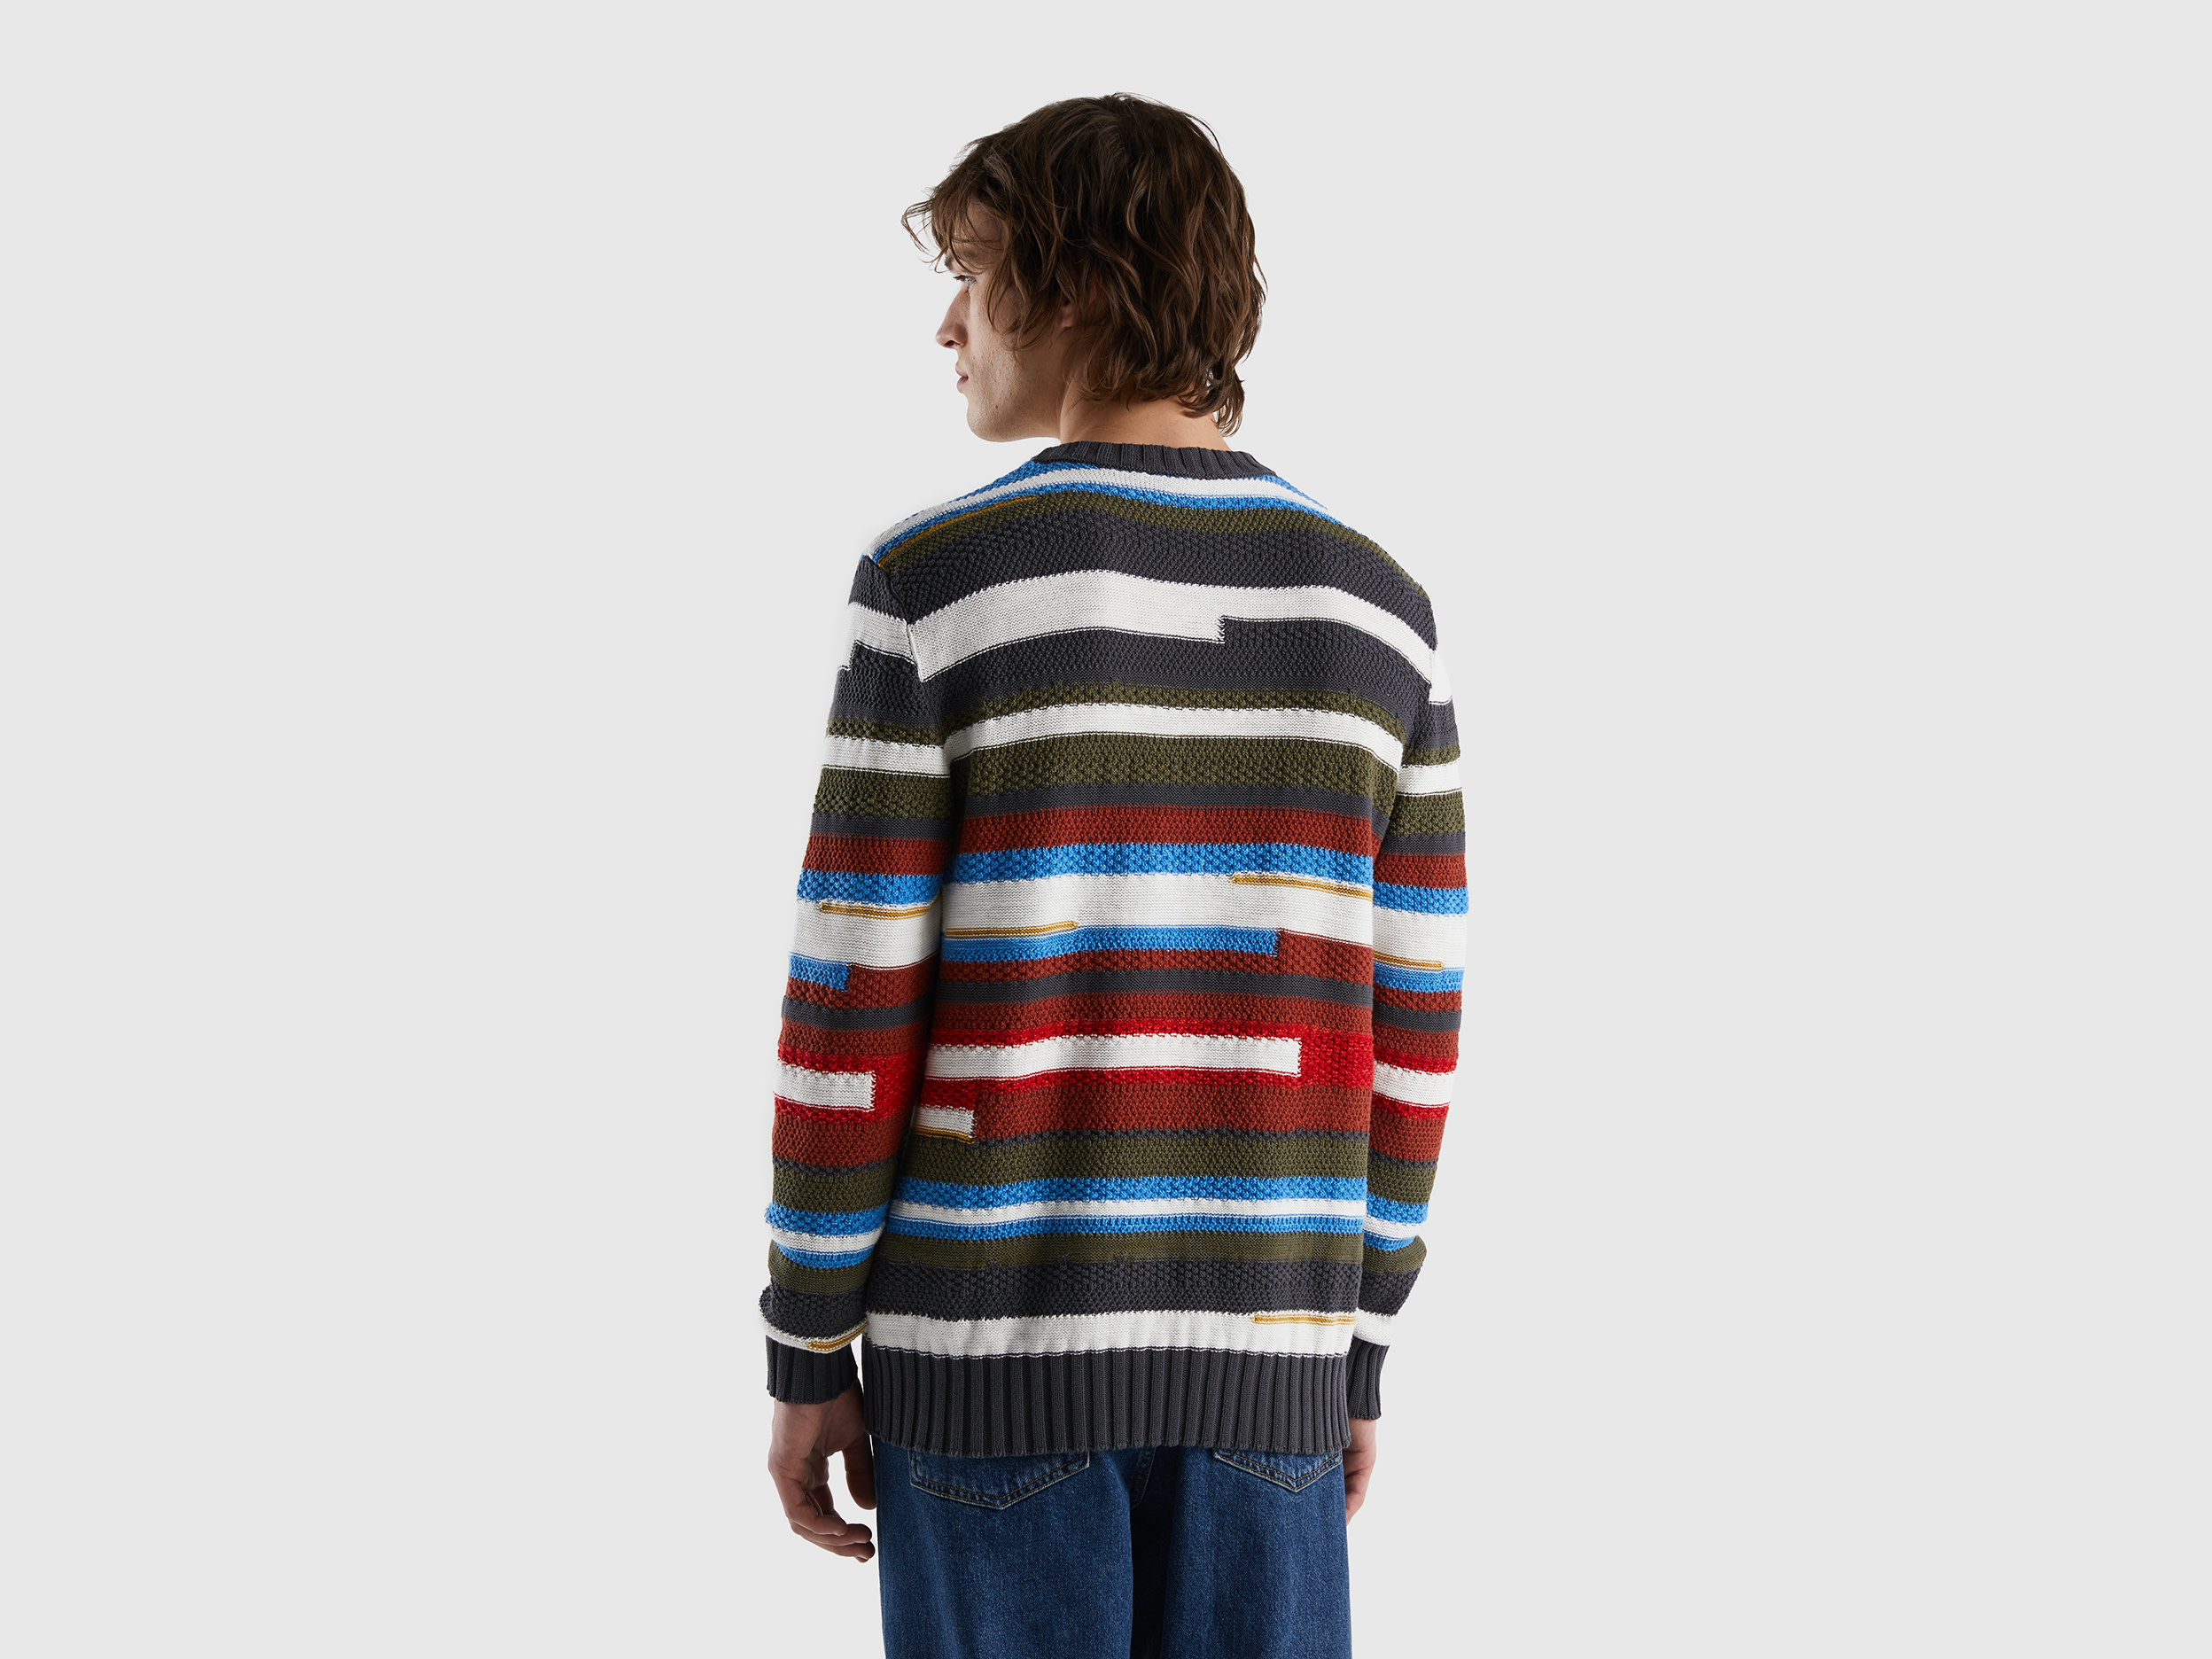 Benetton, Sweater With Multicolored Stripes, Taglia Xxl, Multi-Color, Men